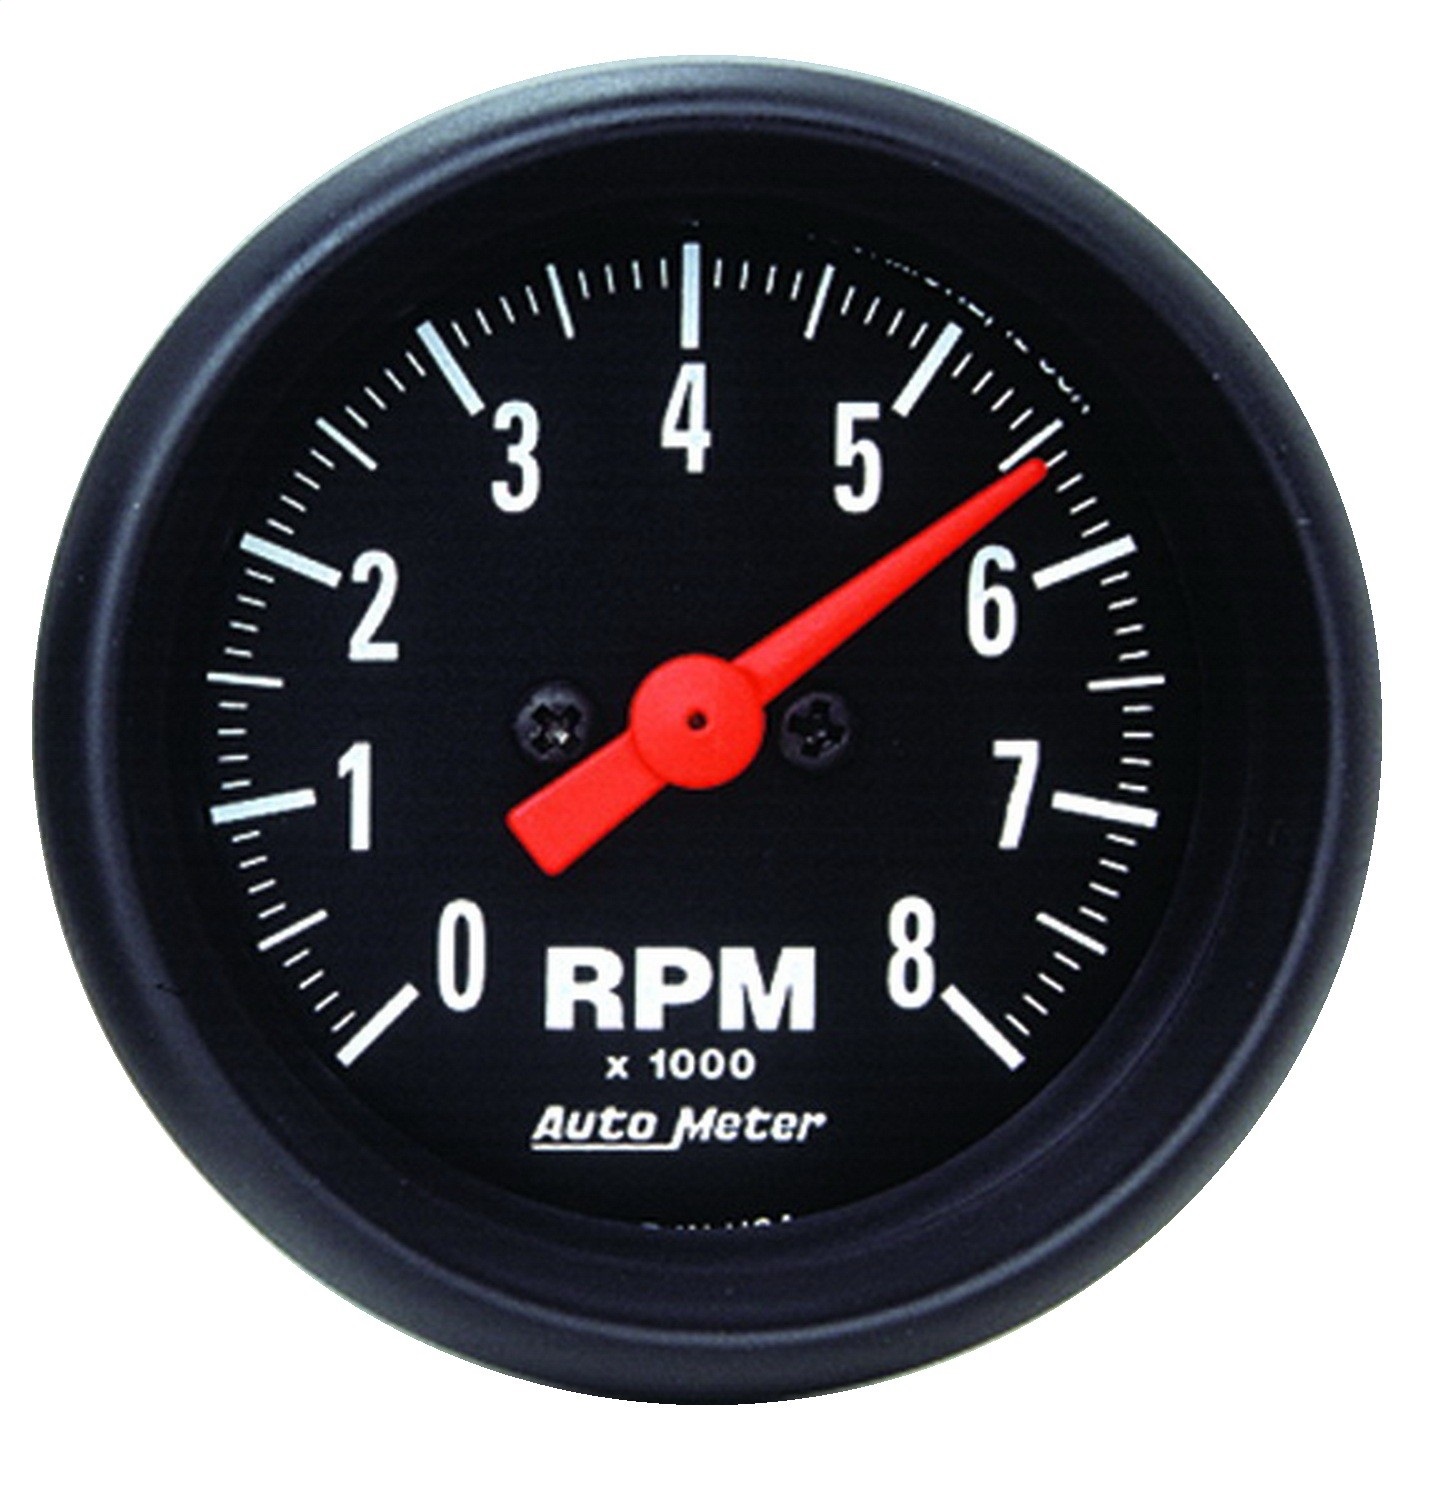 Autometer Mini. 2" TACH, 8,000 RPM